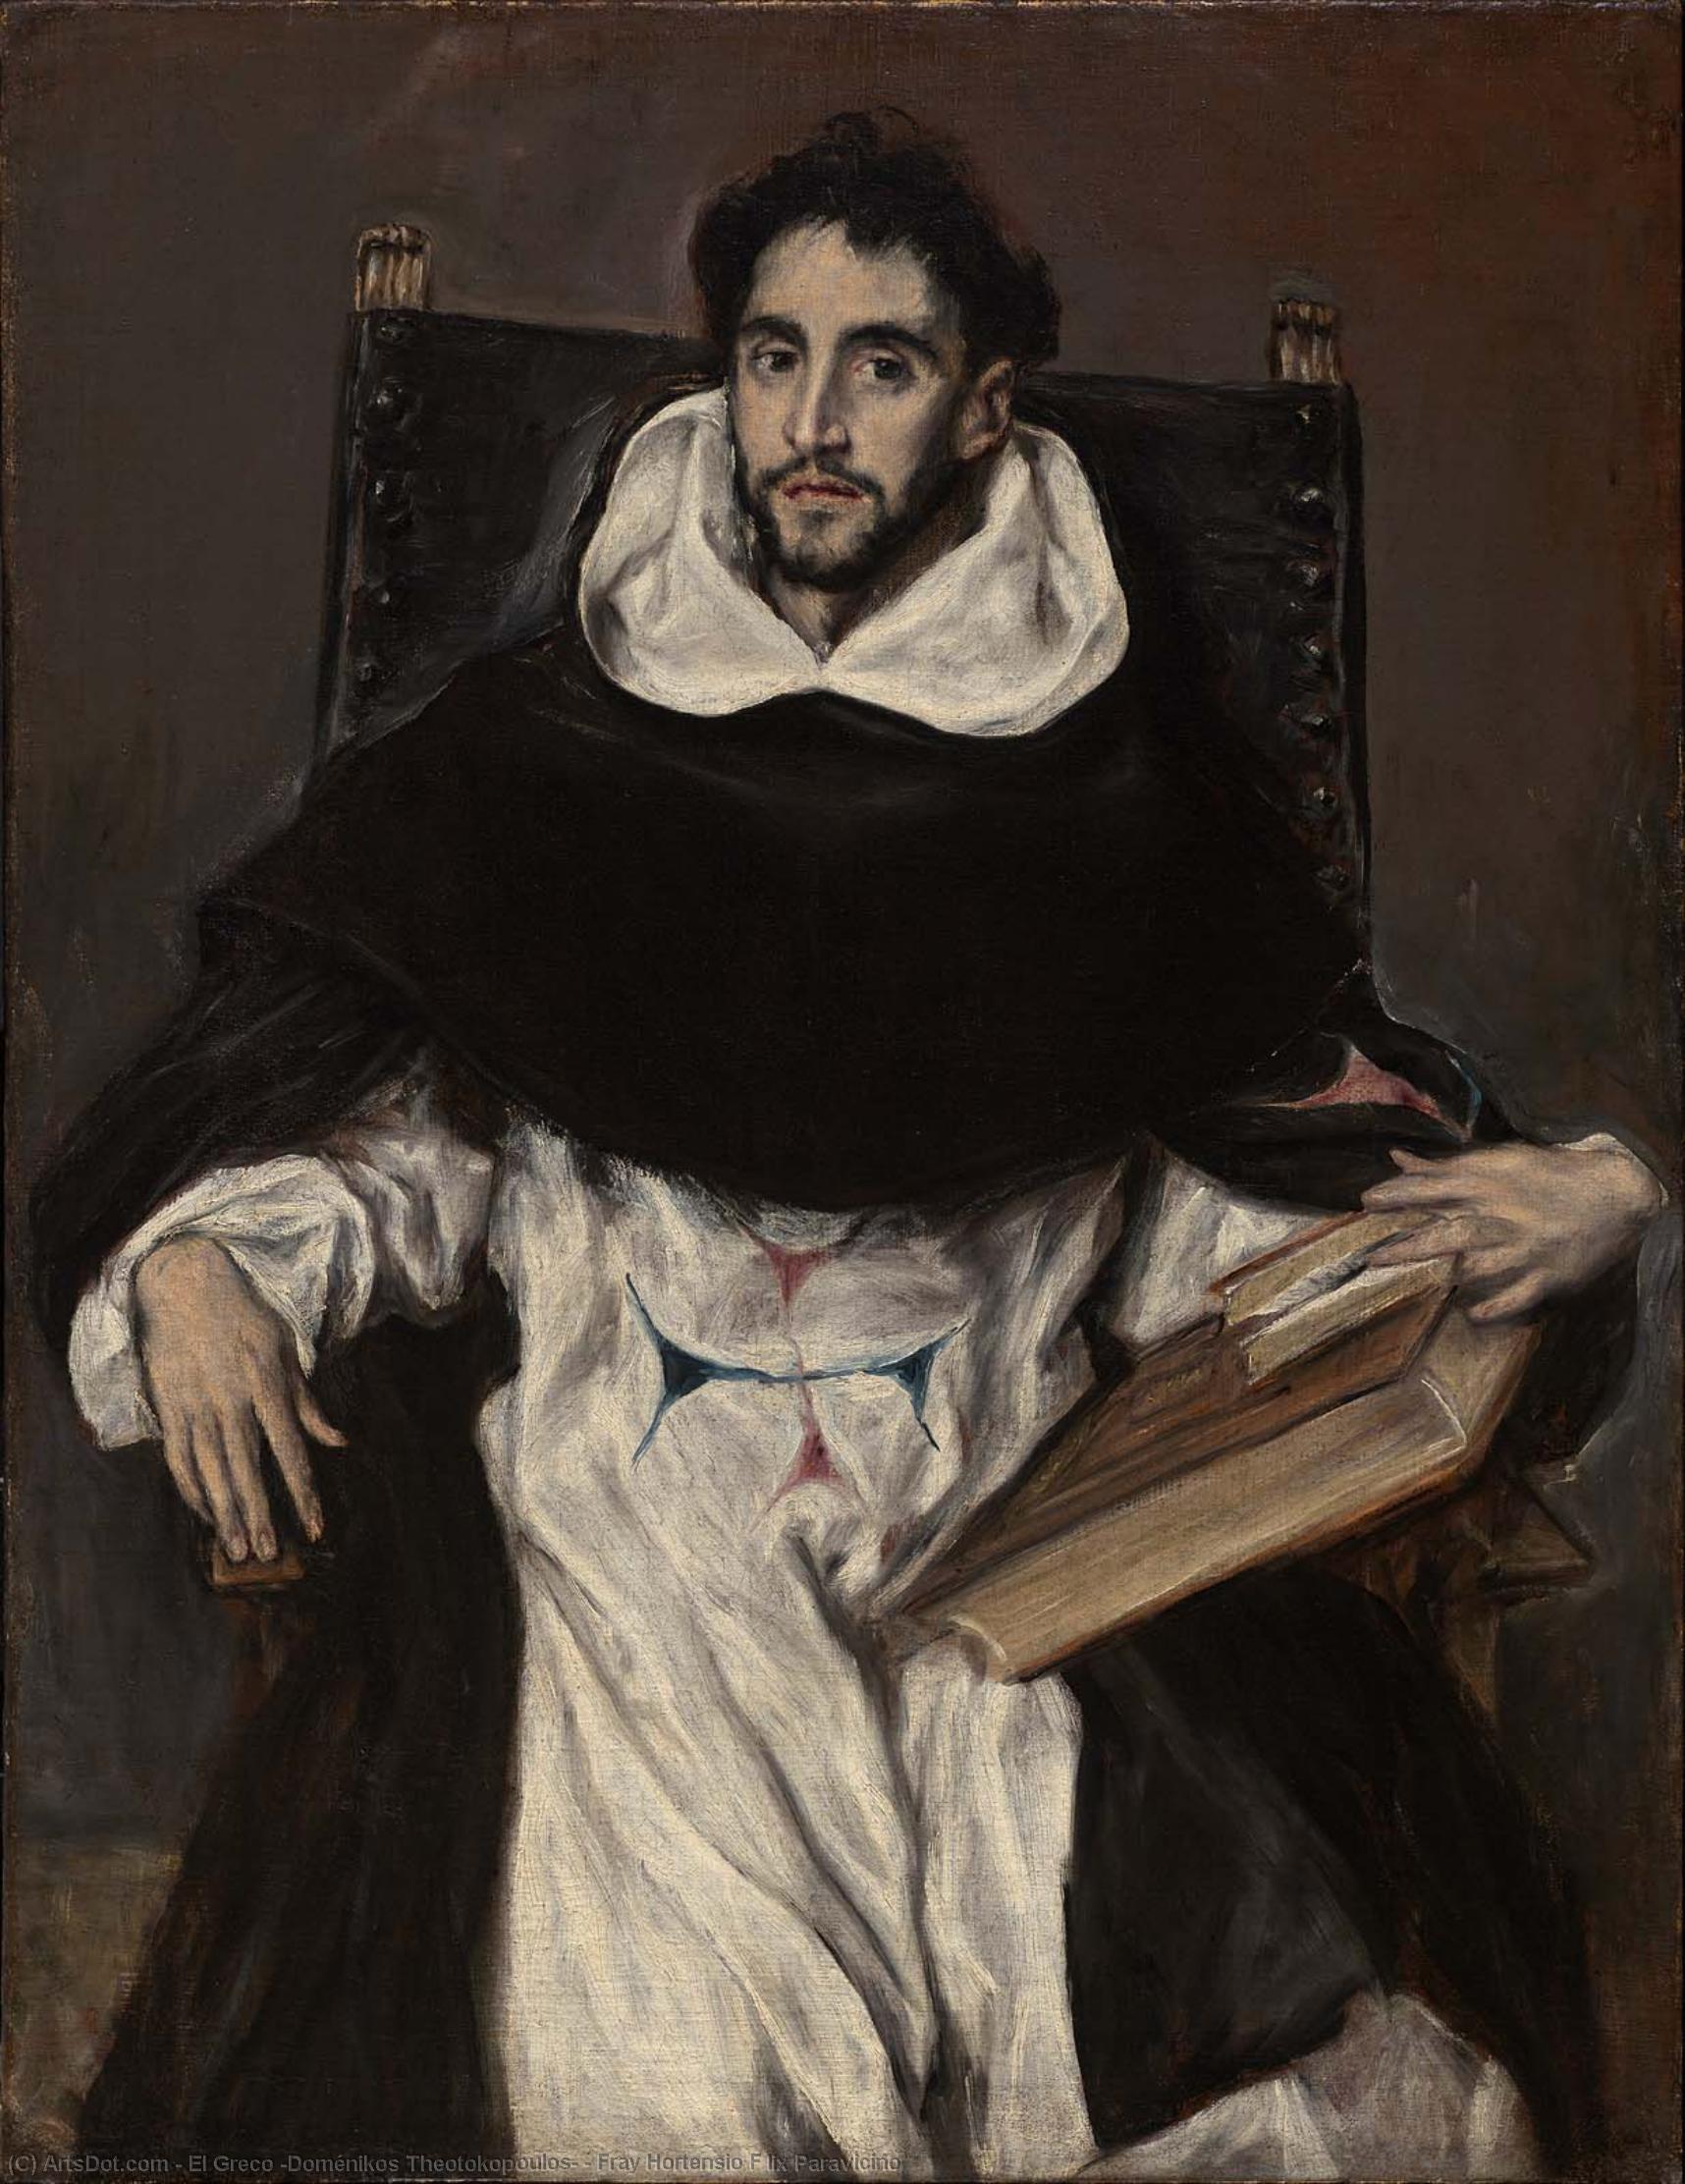 WikiOO.org - Encyclopedia of Fine Arts - Lukisan, Artwork El Greco (Doménikos Theotokopoulos) - Fray Hortensio F lix Paravicino